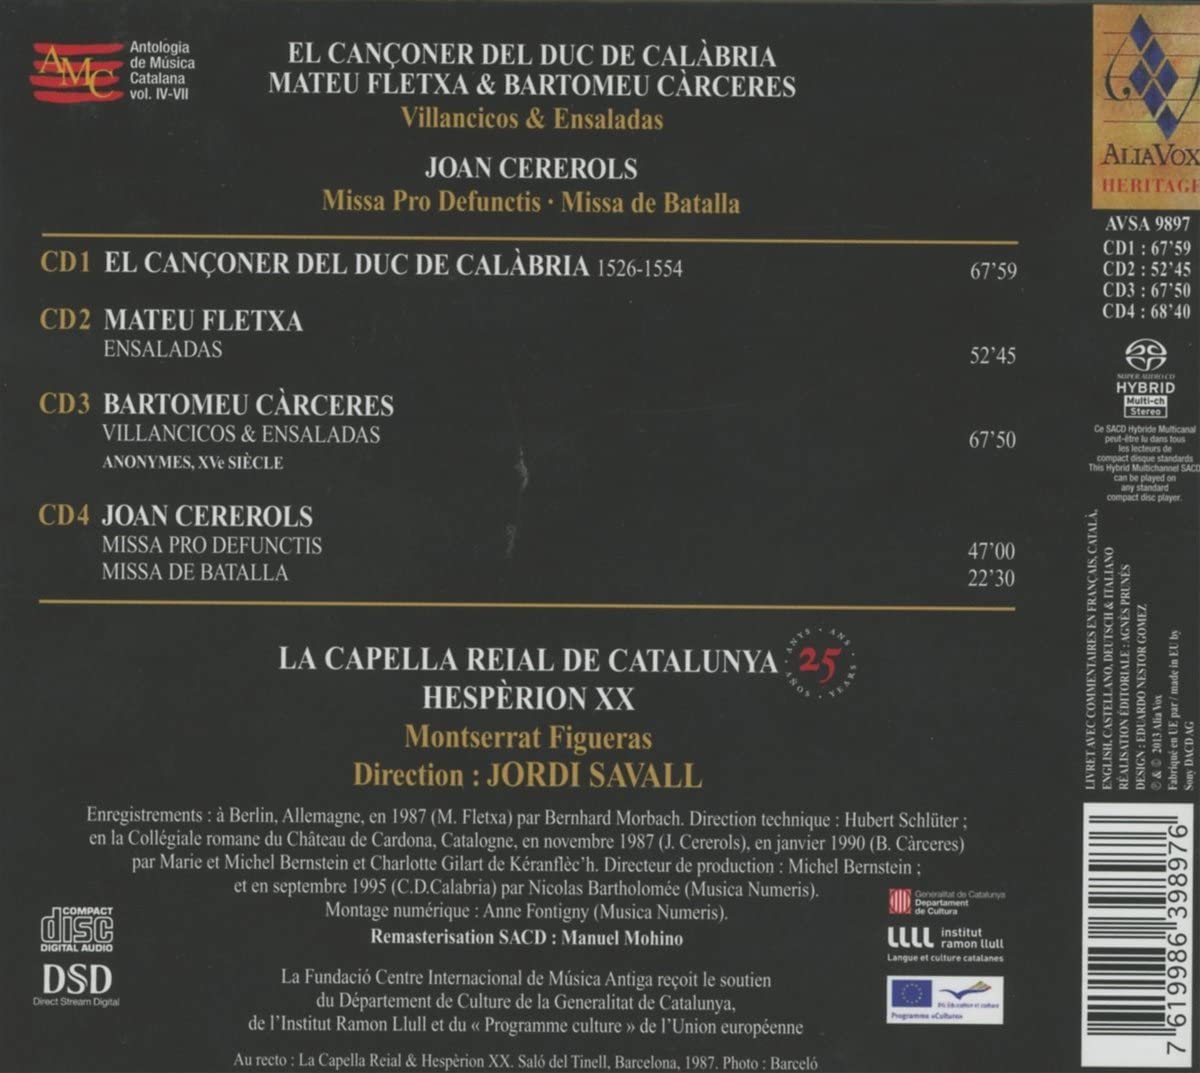 La Capella Reial de Catalunya - 25th Anniversary Boxset: El Canconer del Duc de Calabria, Villancicos & Ensaladas, Cererols Missa Pro Defunctis - slide-1